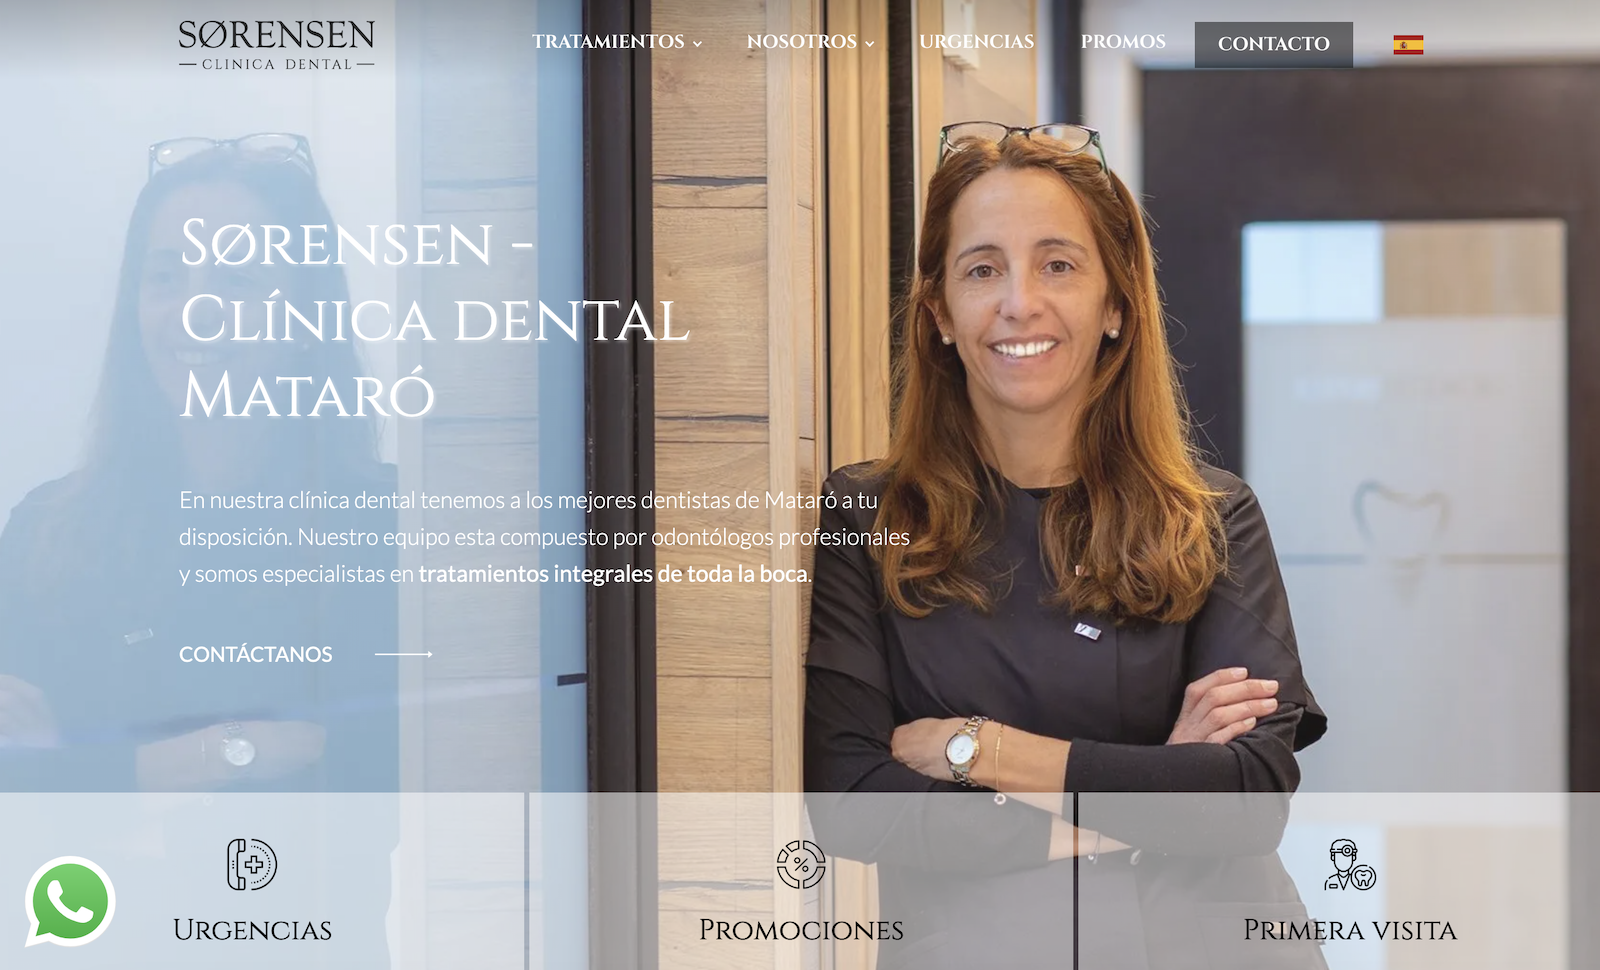 Clinica Dental Sorensen